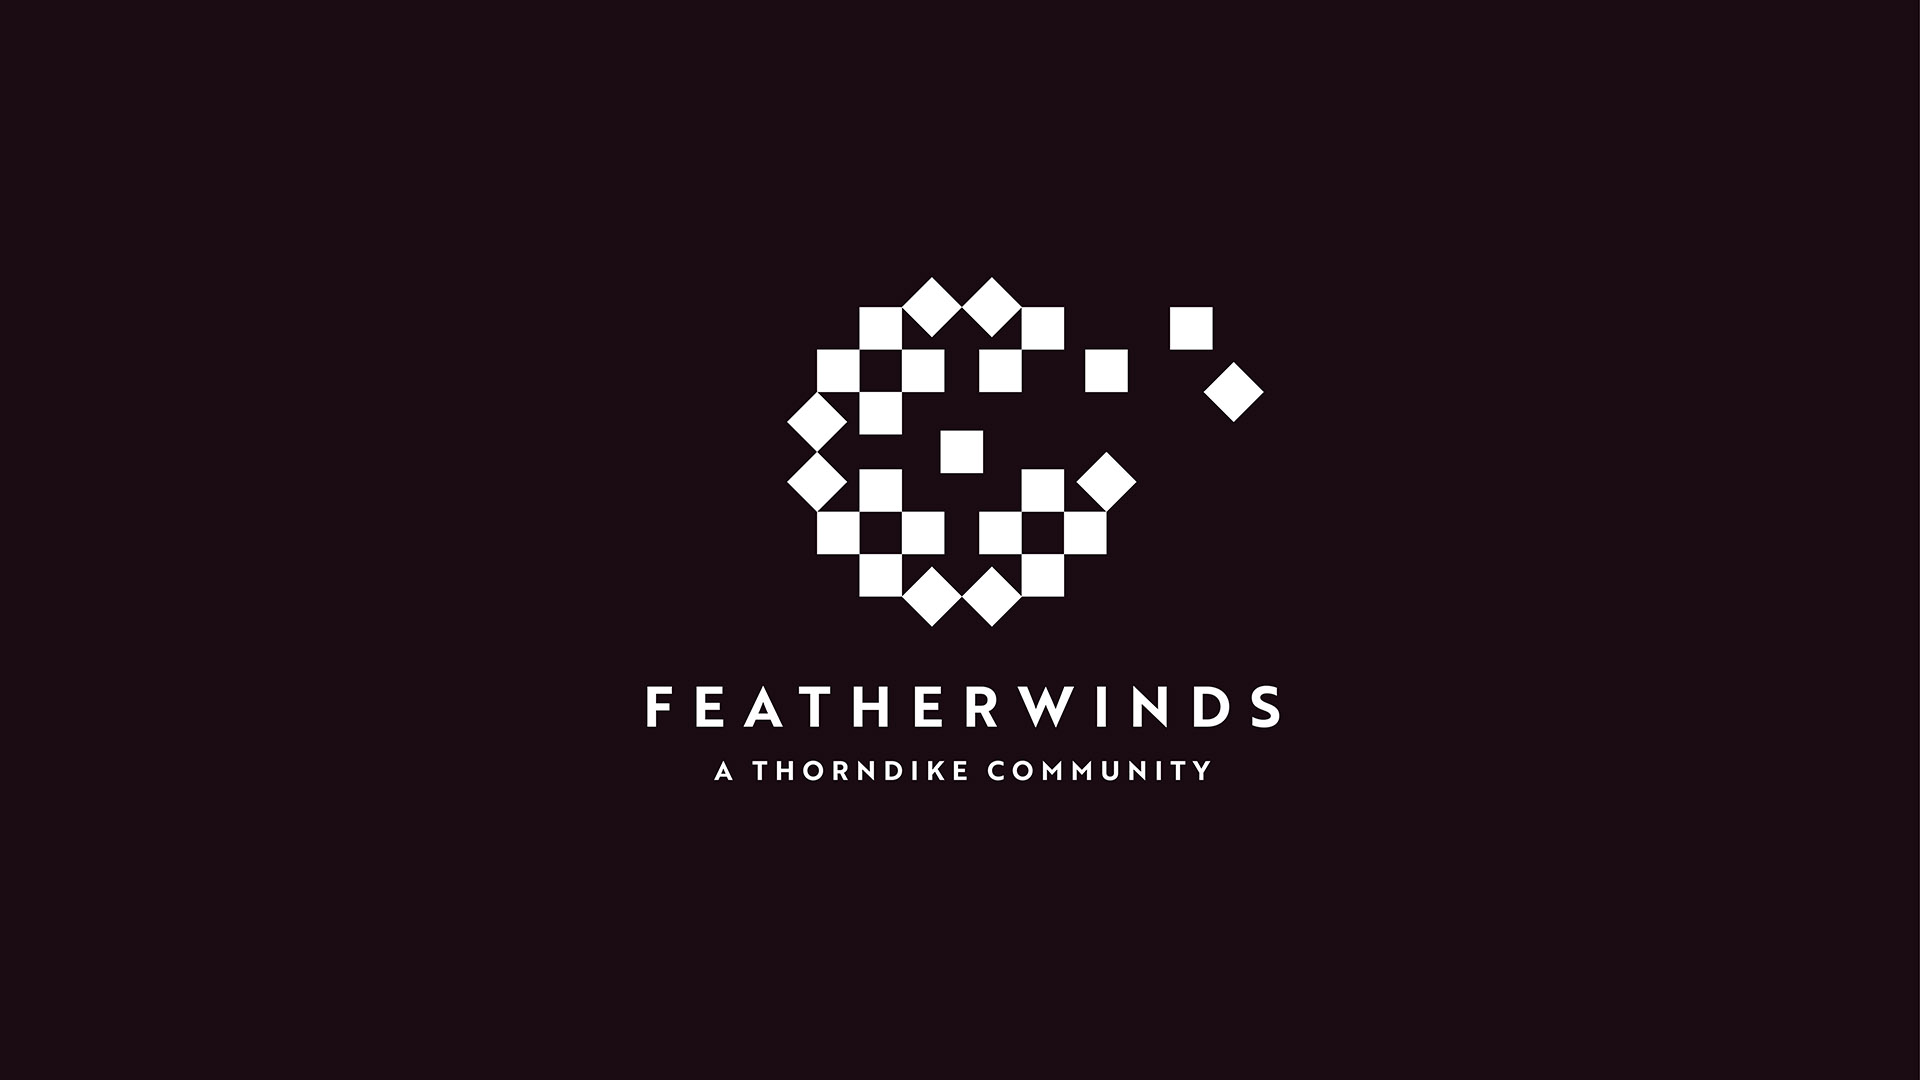 featherwinds white logo on black